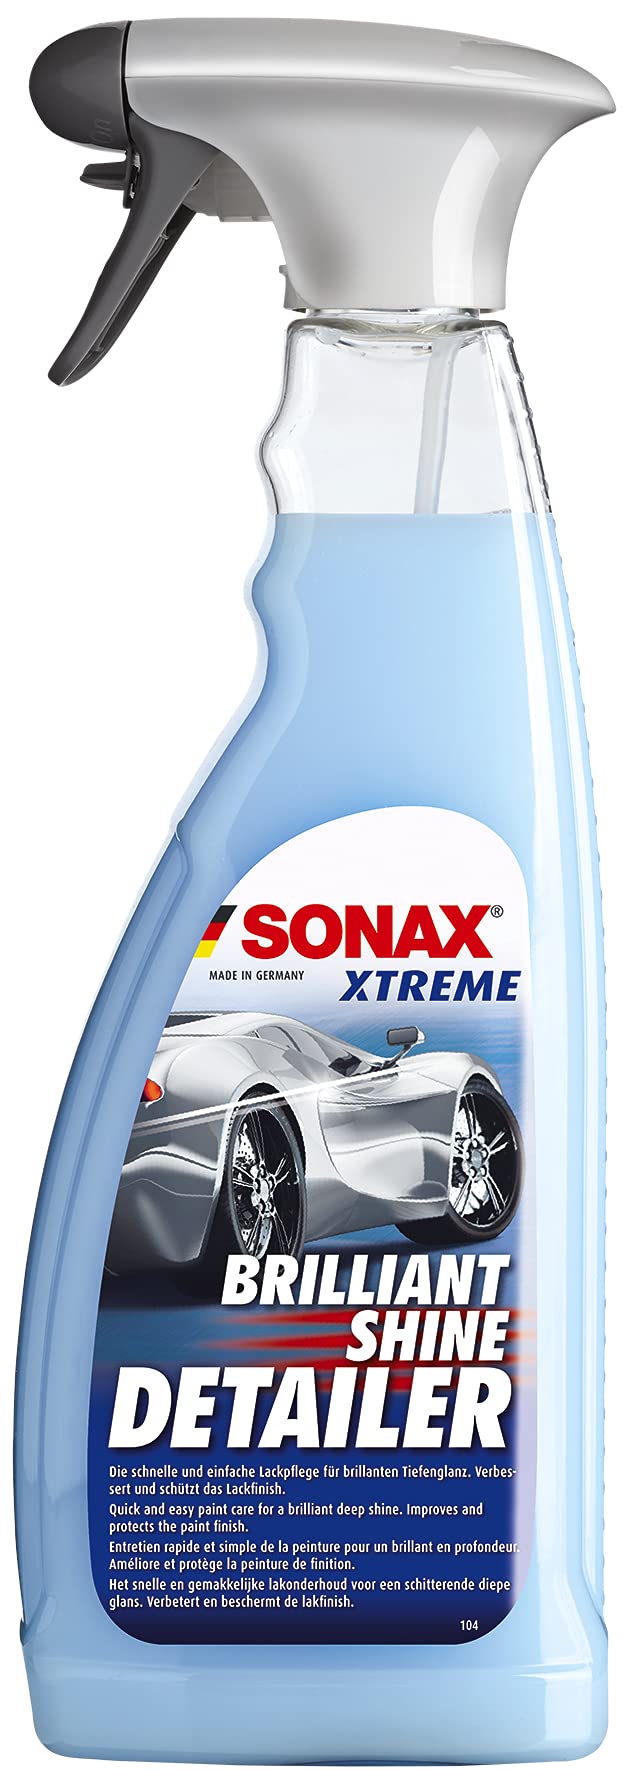 SONAX XTREME BrilliantShine Detailer (750 ml) entretien et nettoie rapide et simple la peinture avec l'effet déperlant | Réf: 02874000-810 von SONAX